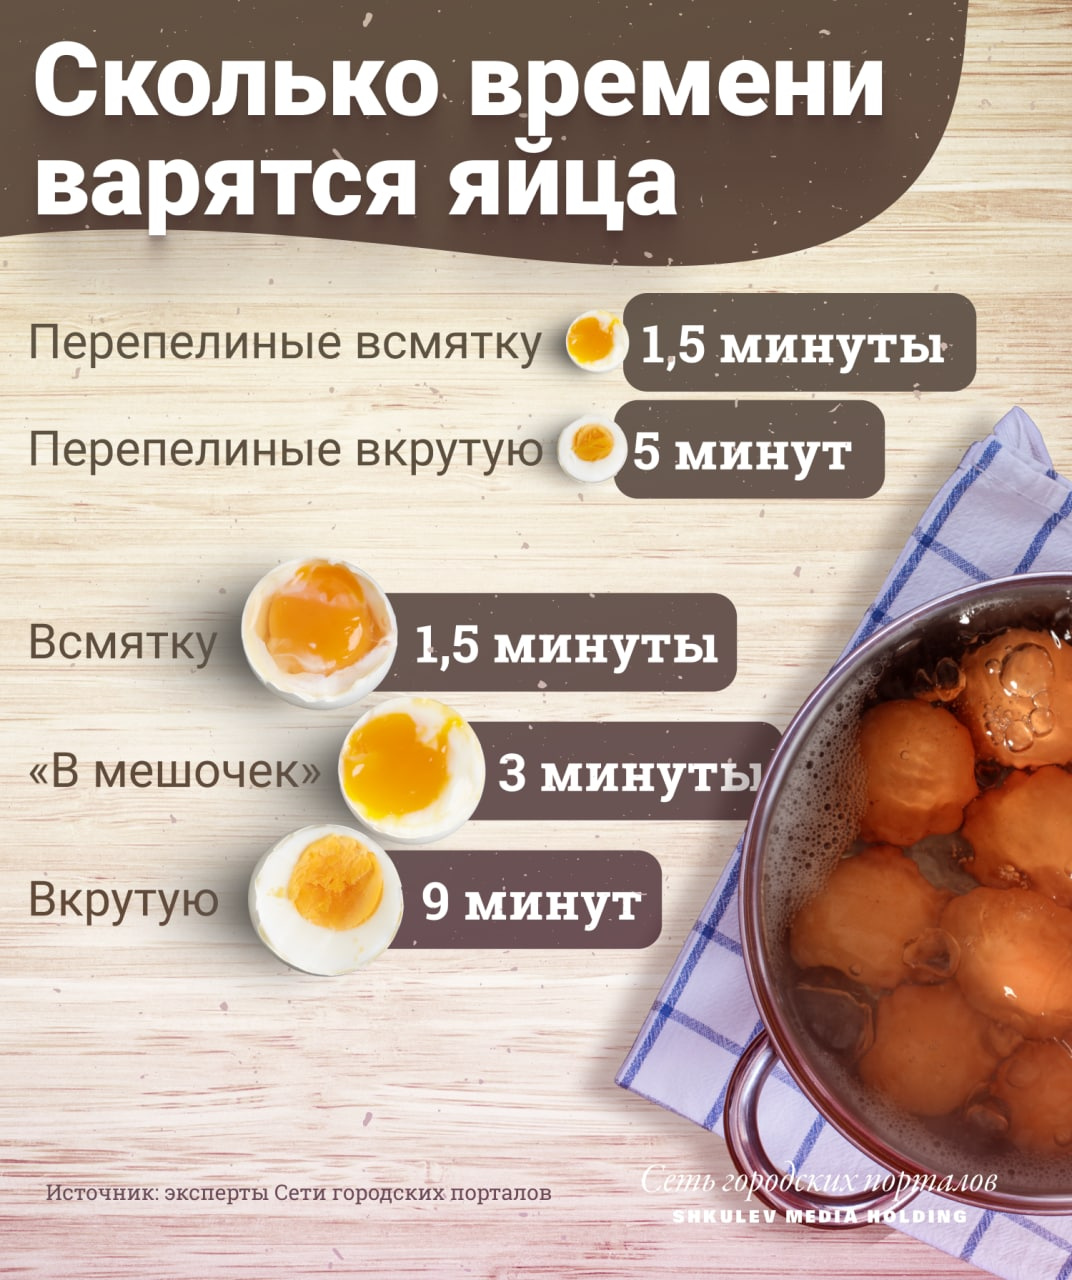 Как правильно варить продукты: макароны, кашу, яйца, мясо, курицу, сосиски - 26 декабря 2021 - 59.ru